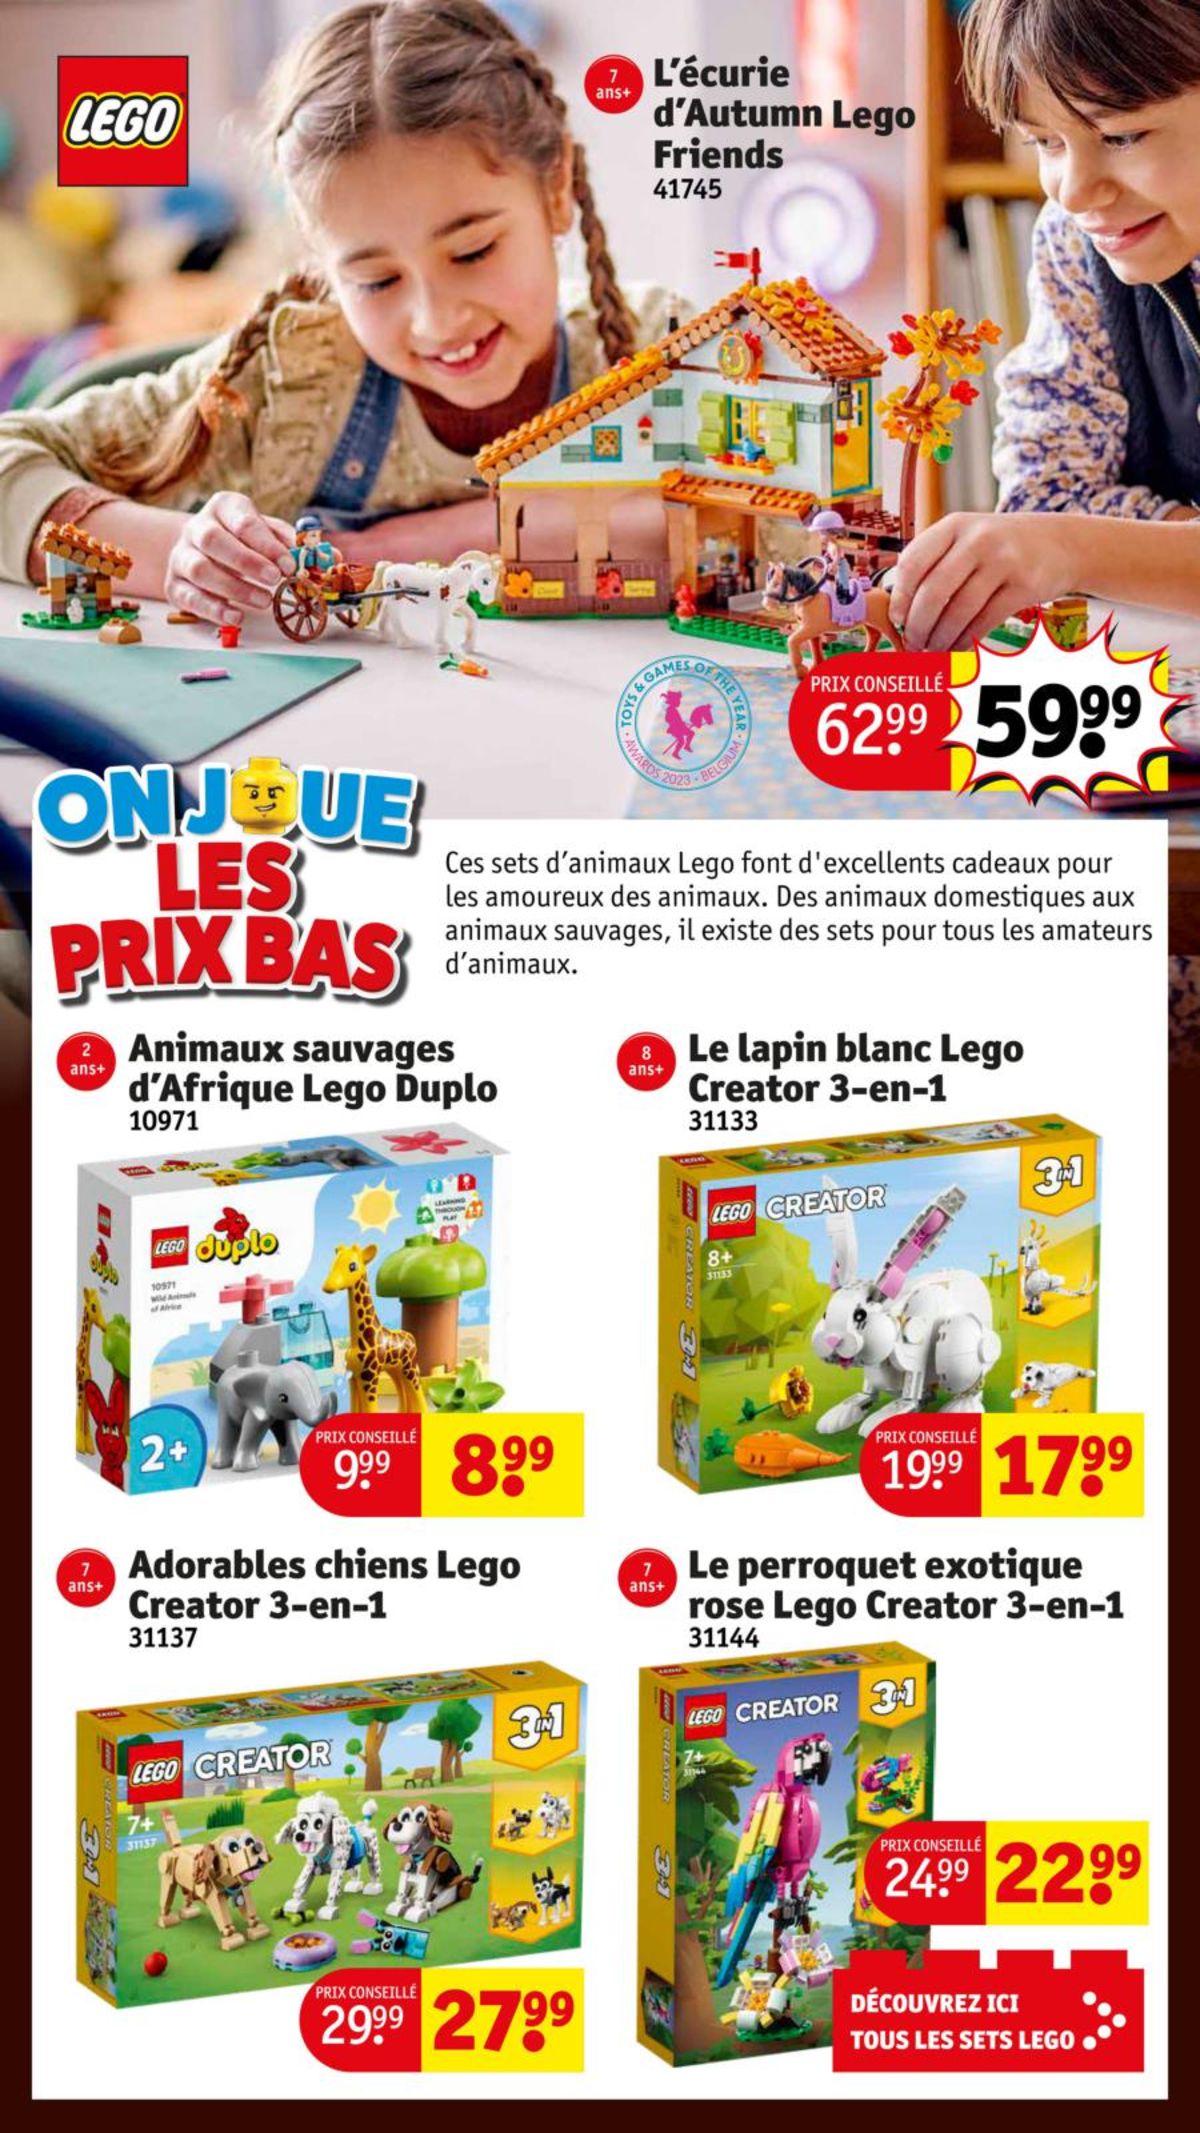 Catalogue Le magasin de jouets aux meilleures offres !, page 00002